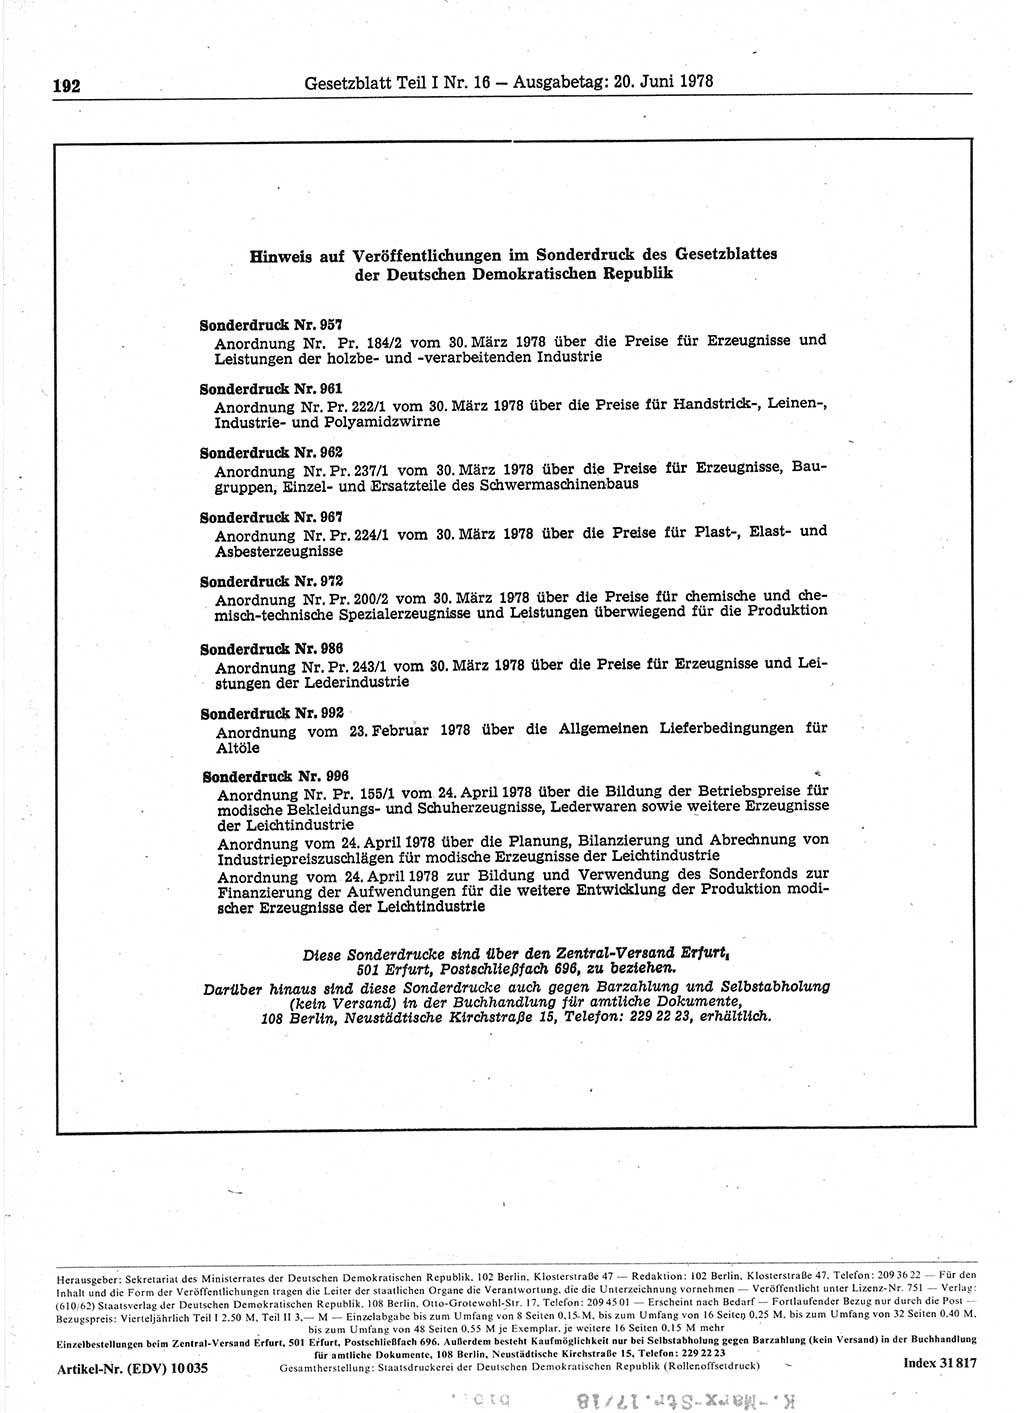 Gesetzblatt (GBl.) der Deutschen Demokratischen Republik (DDR) Teil Ⅰ 1978, Seite 192 (GBl. DDR Ⅰ 1978, S. 192)